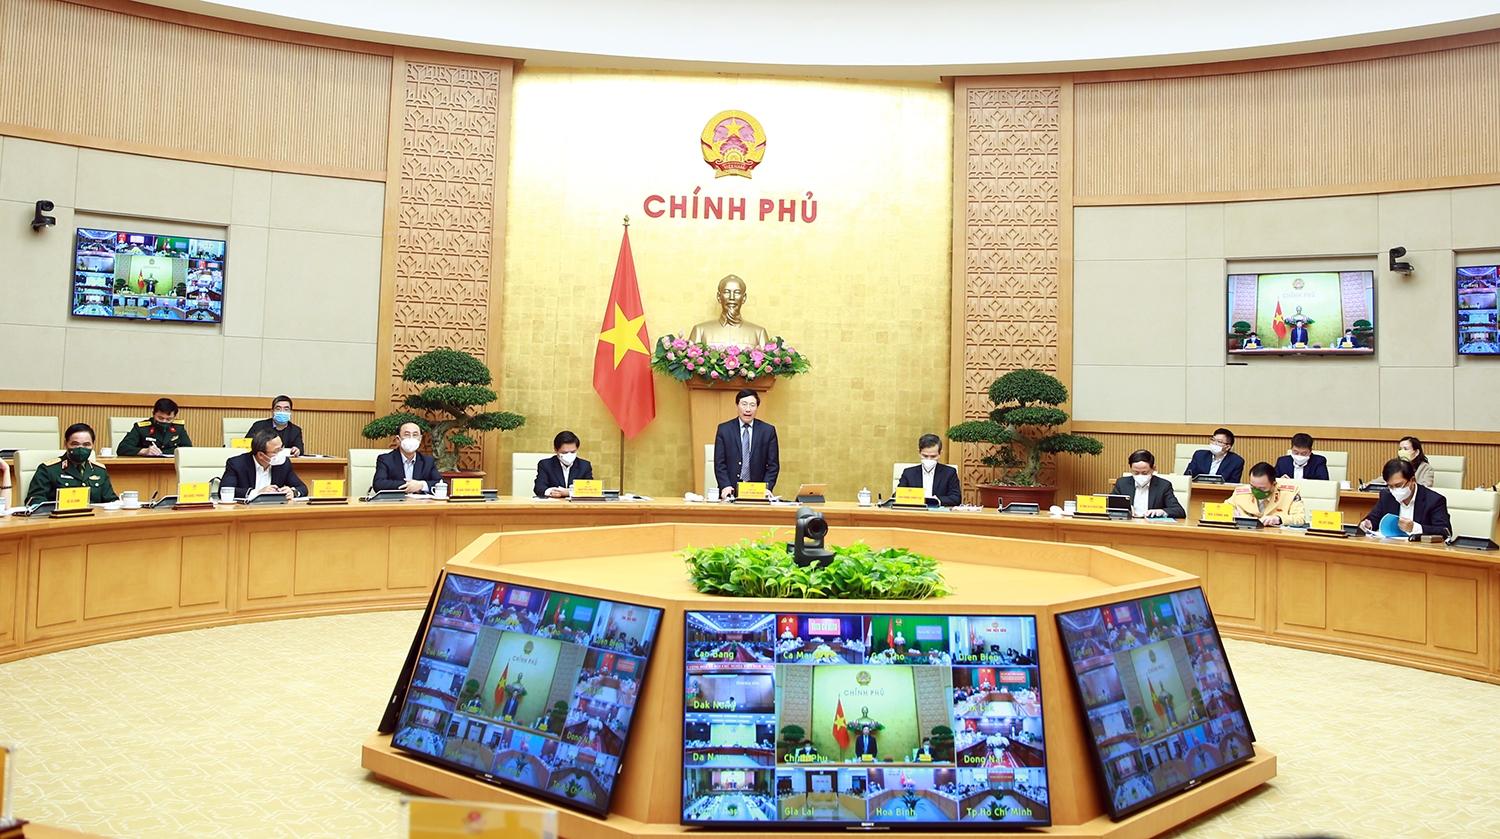 Phó Thủ tướng Phạm Bình Minh: Cần kiên trì xây dựng văn hoá giao thông an toàn